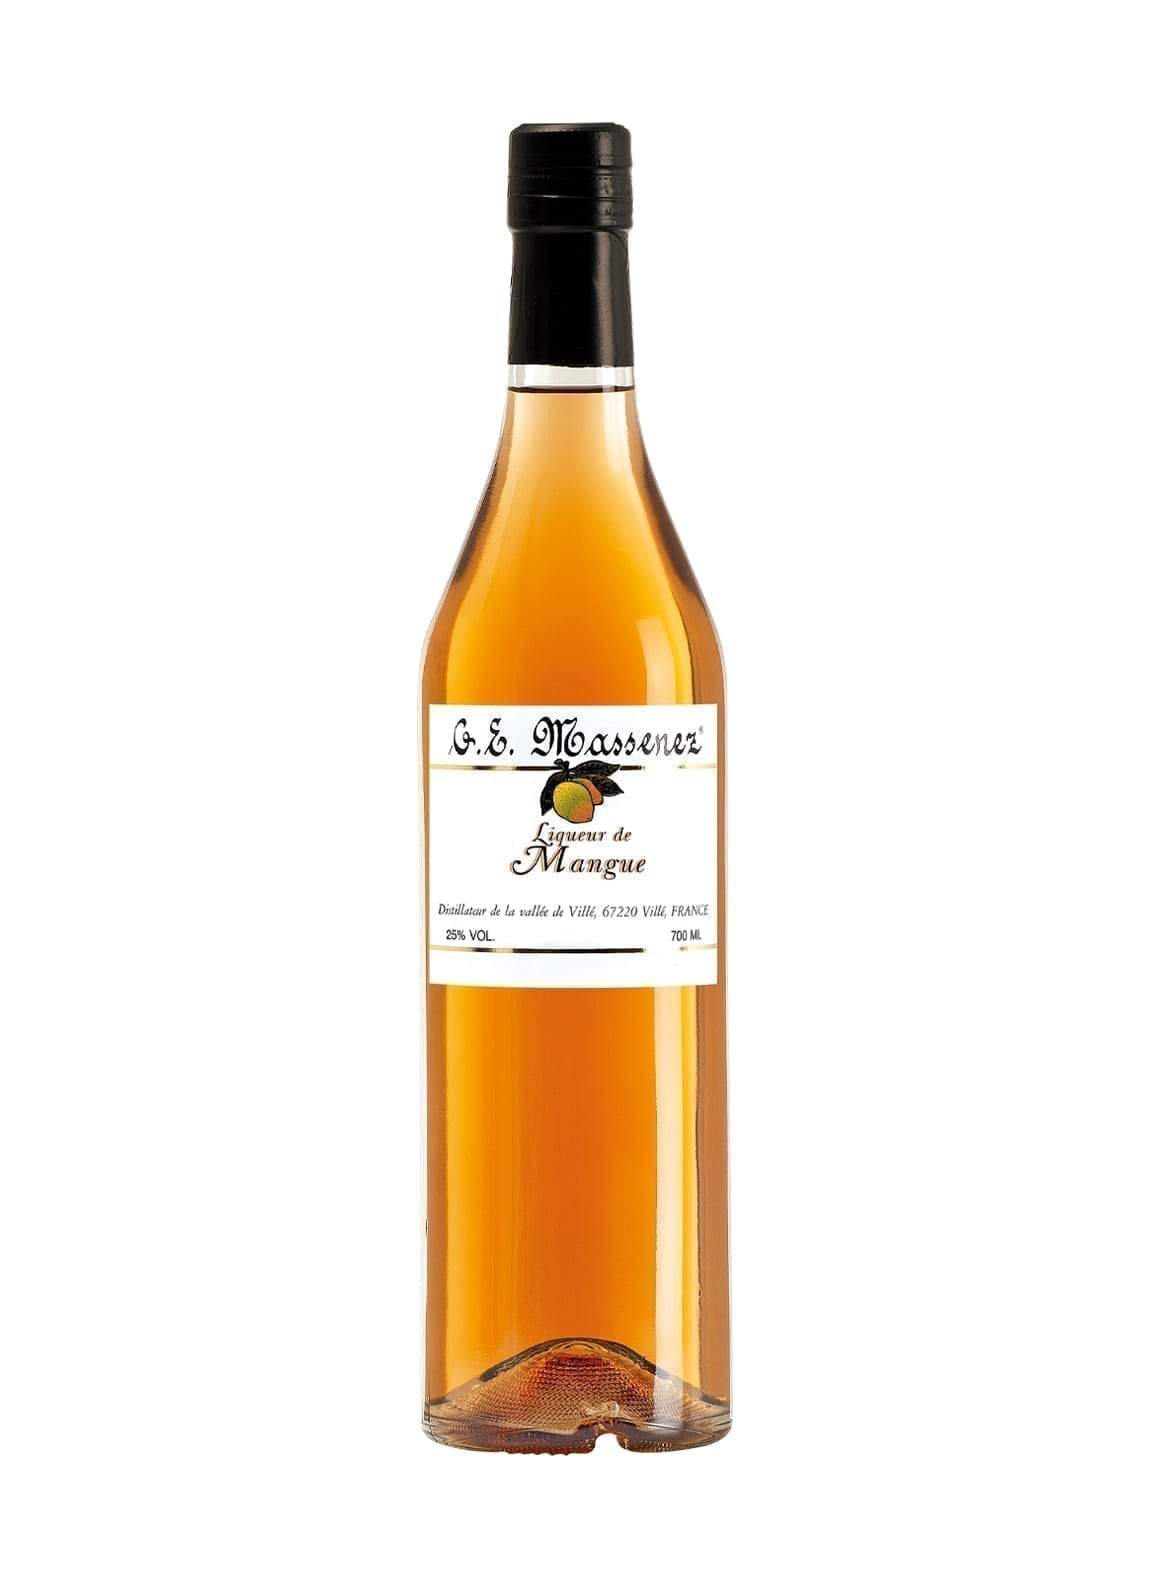 Massenez Liqueur de Mangue (Mango) 25% 700ml | Liqueurs | Shop online at Spirits of France